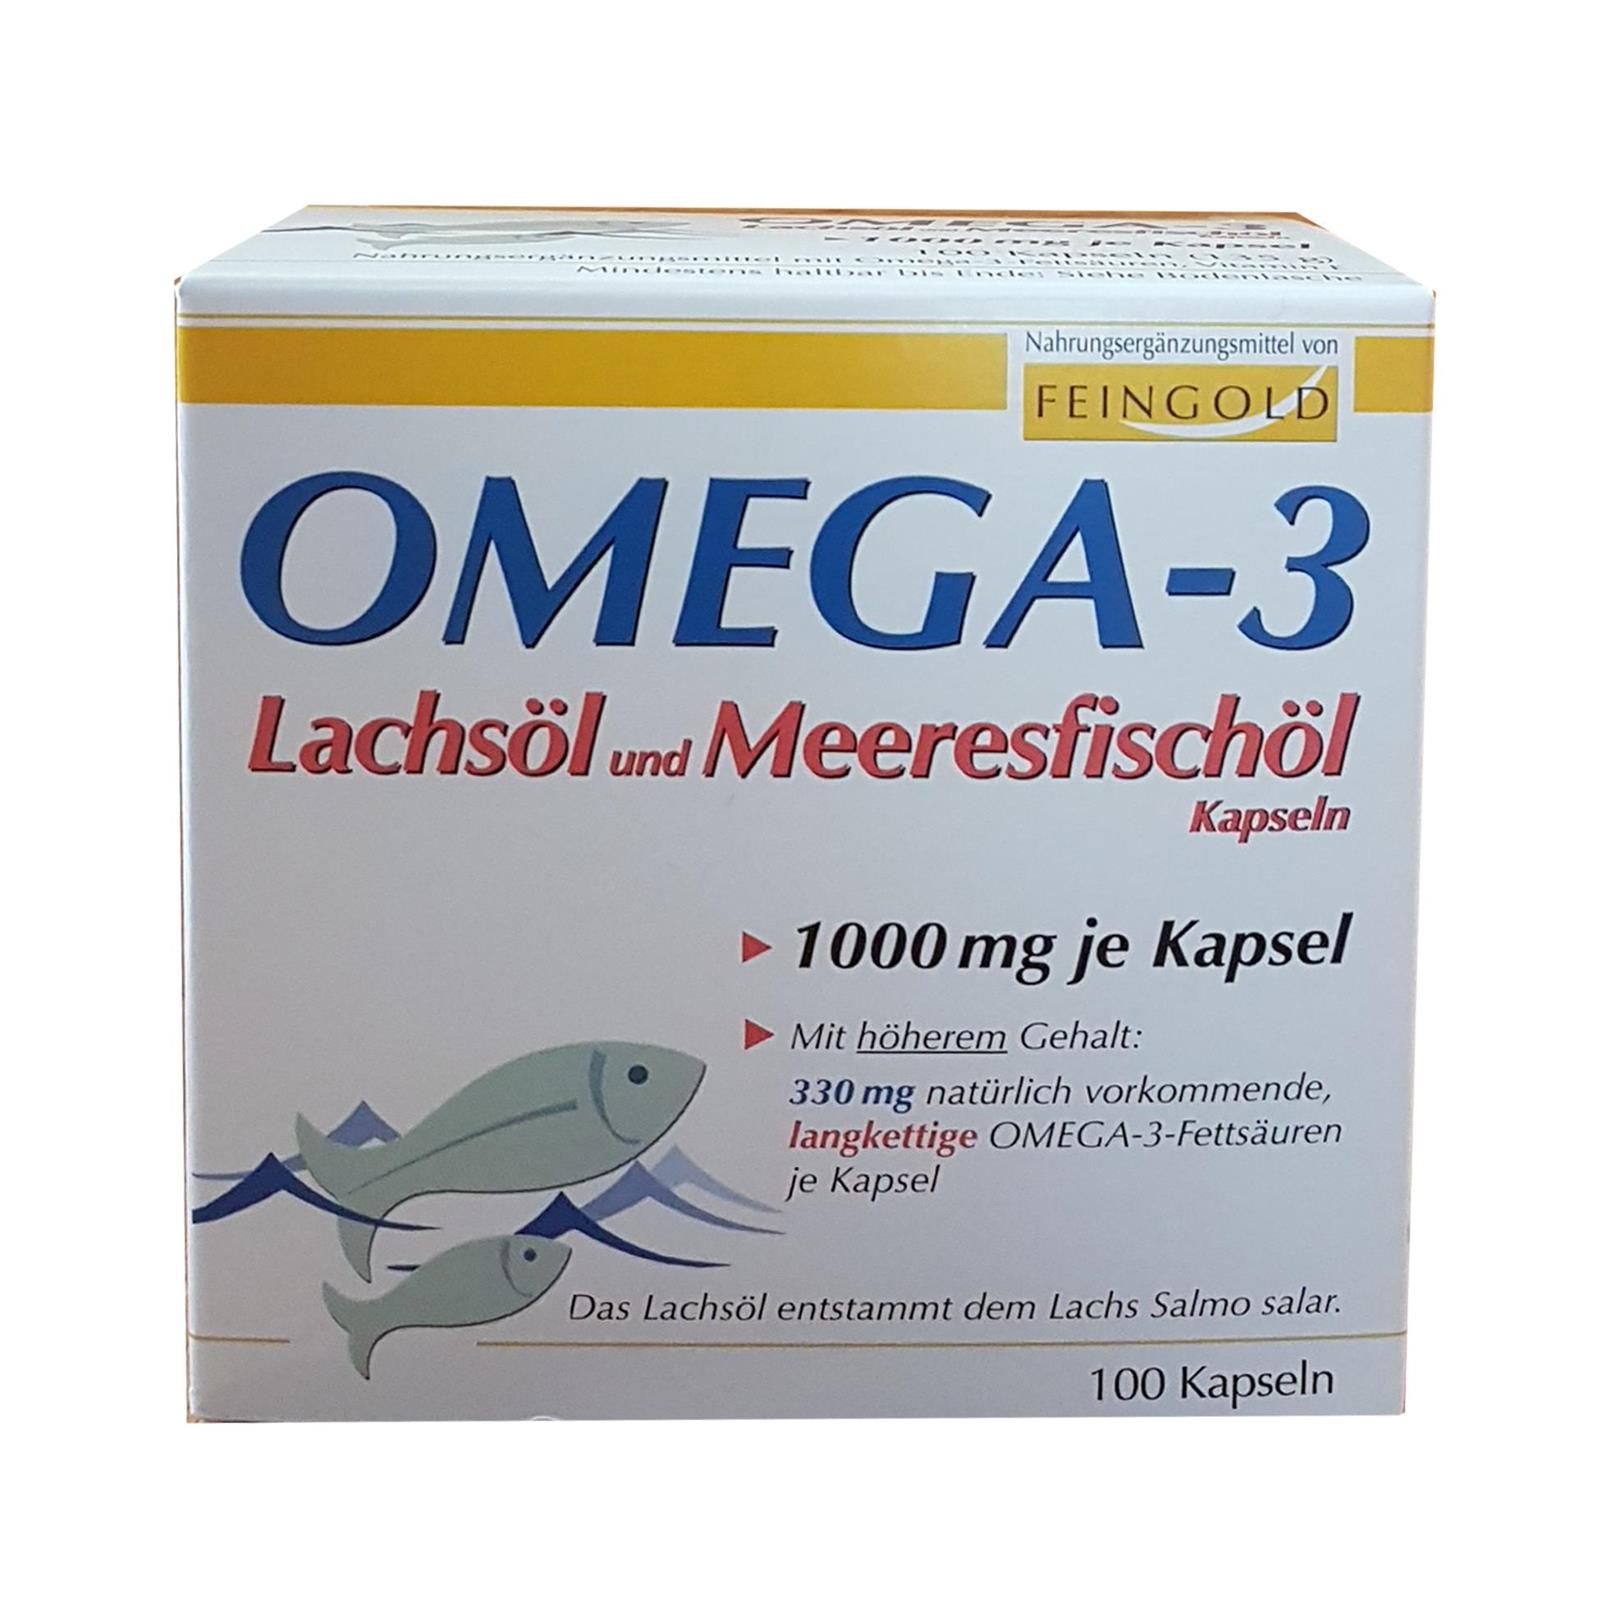 Omega-3 Lachsöl und Meeresfischöl mit D3 Kapseln von Burton Feingold